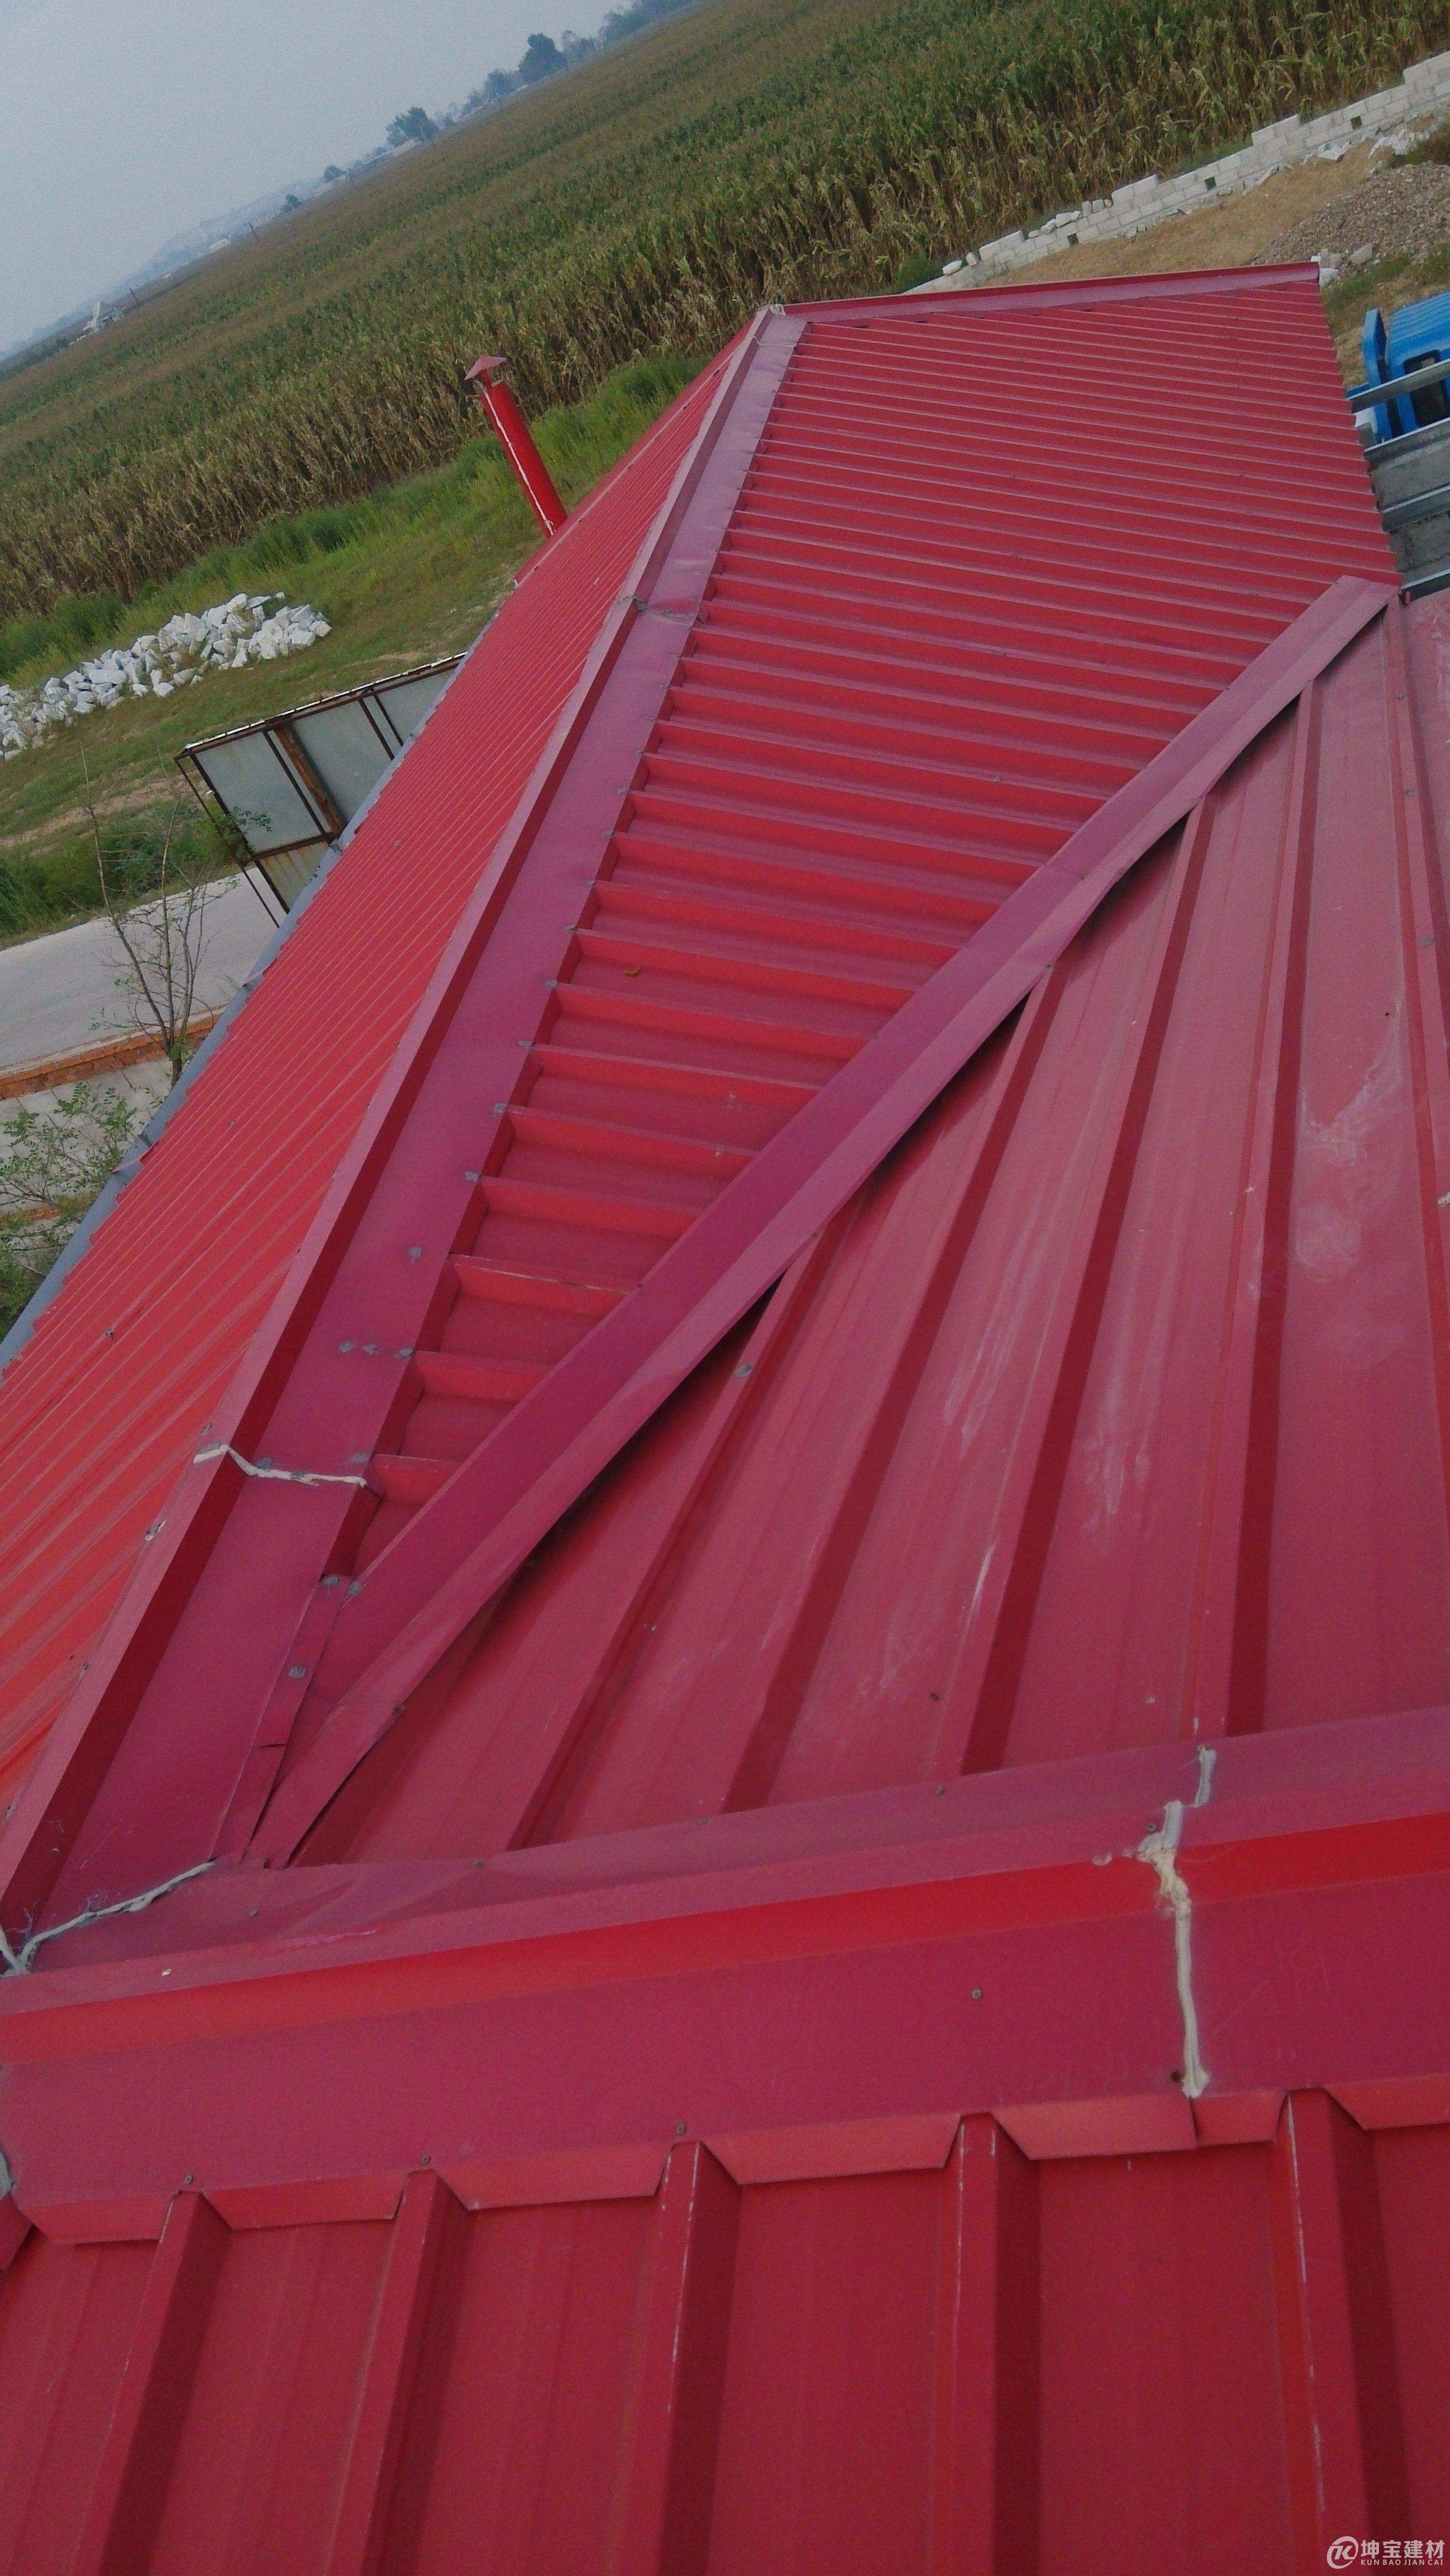 成都彩钢瓦棚雨棚设计安装 滑动式彩钢雨棚 钢筋棚-阿里巴巴